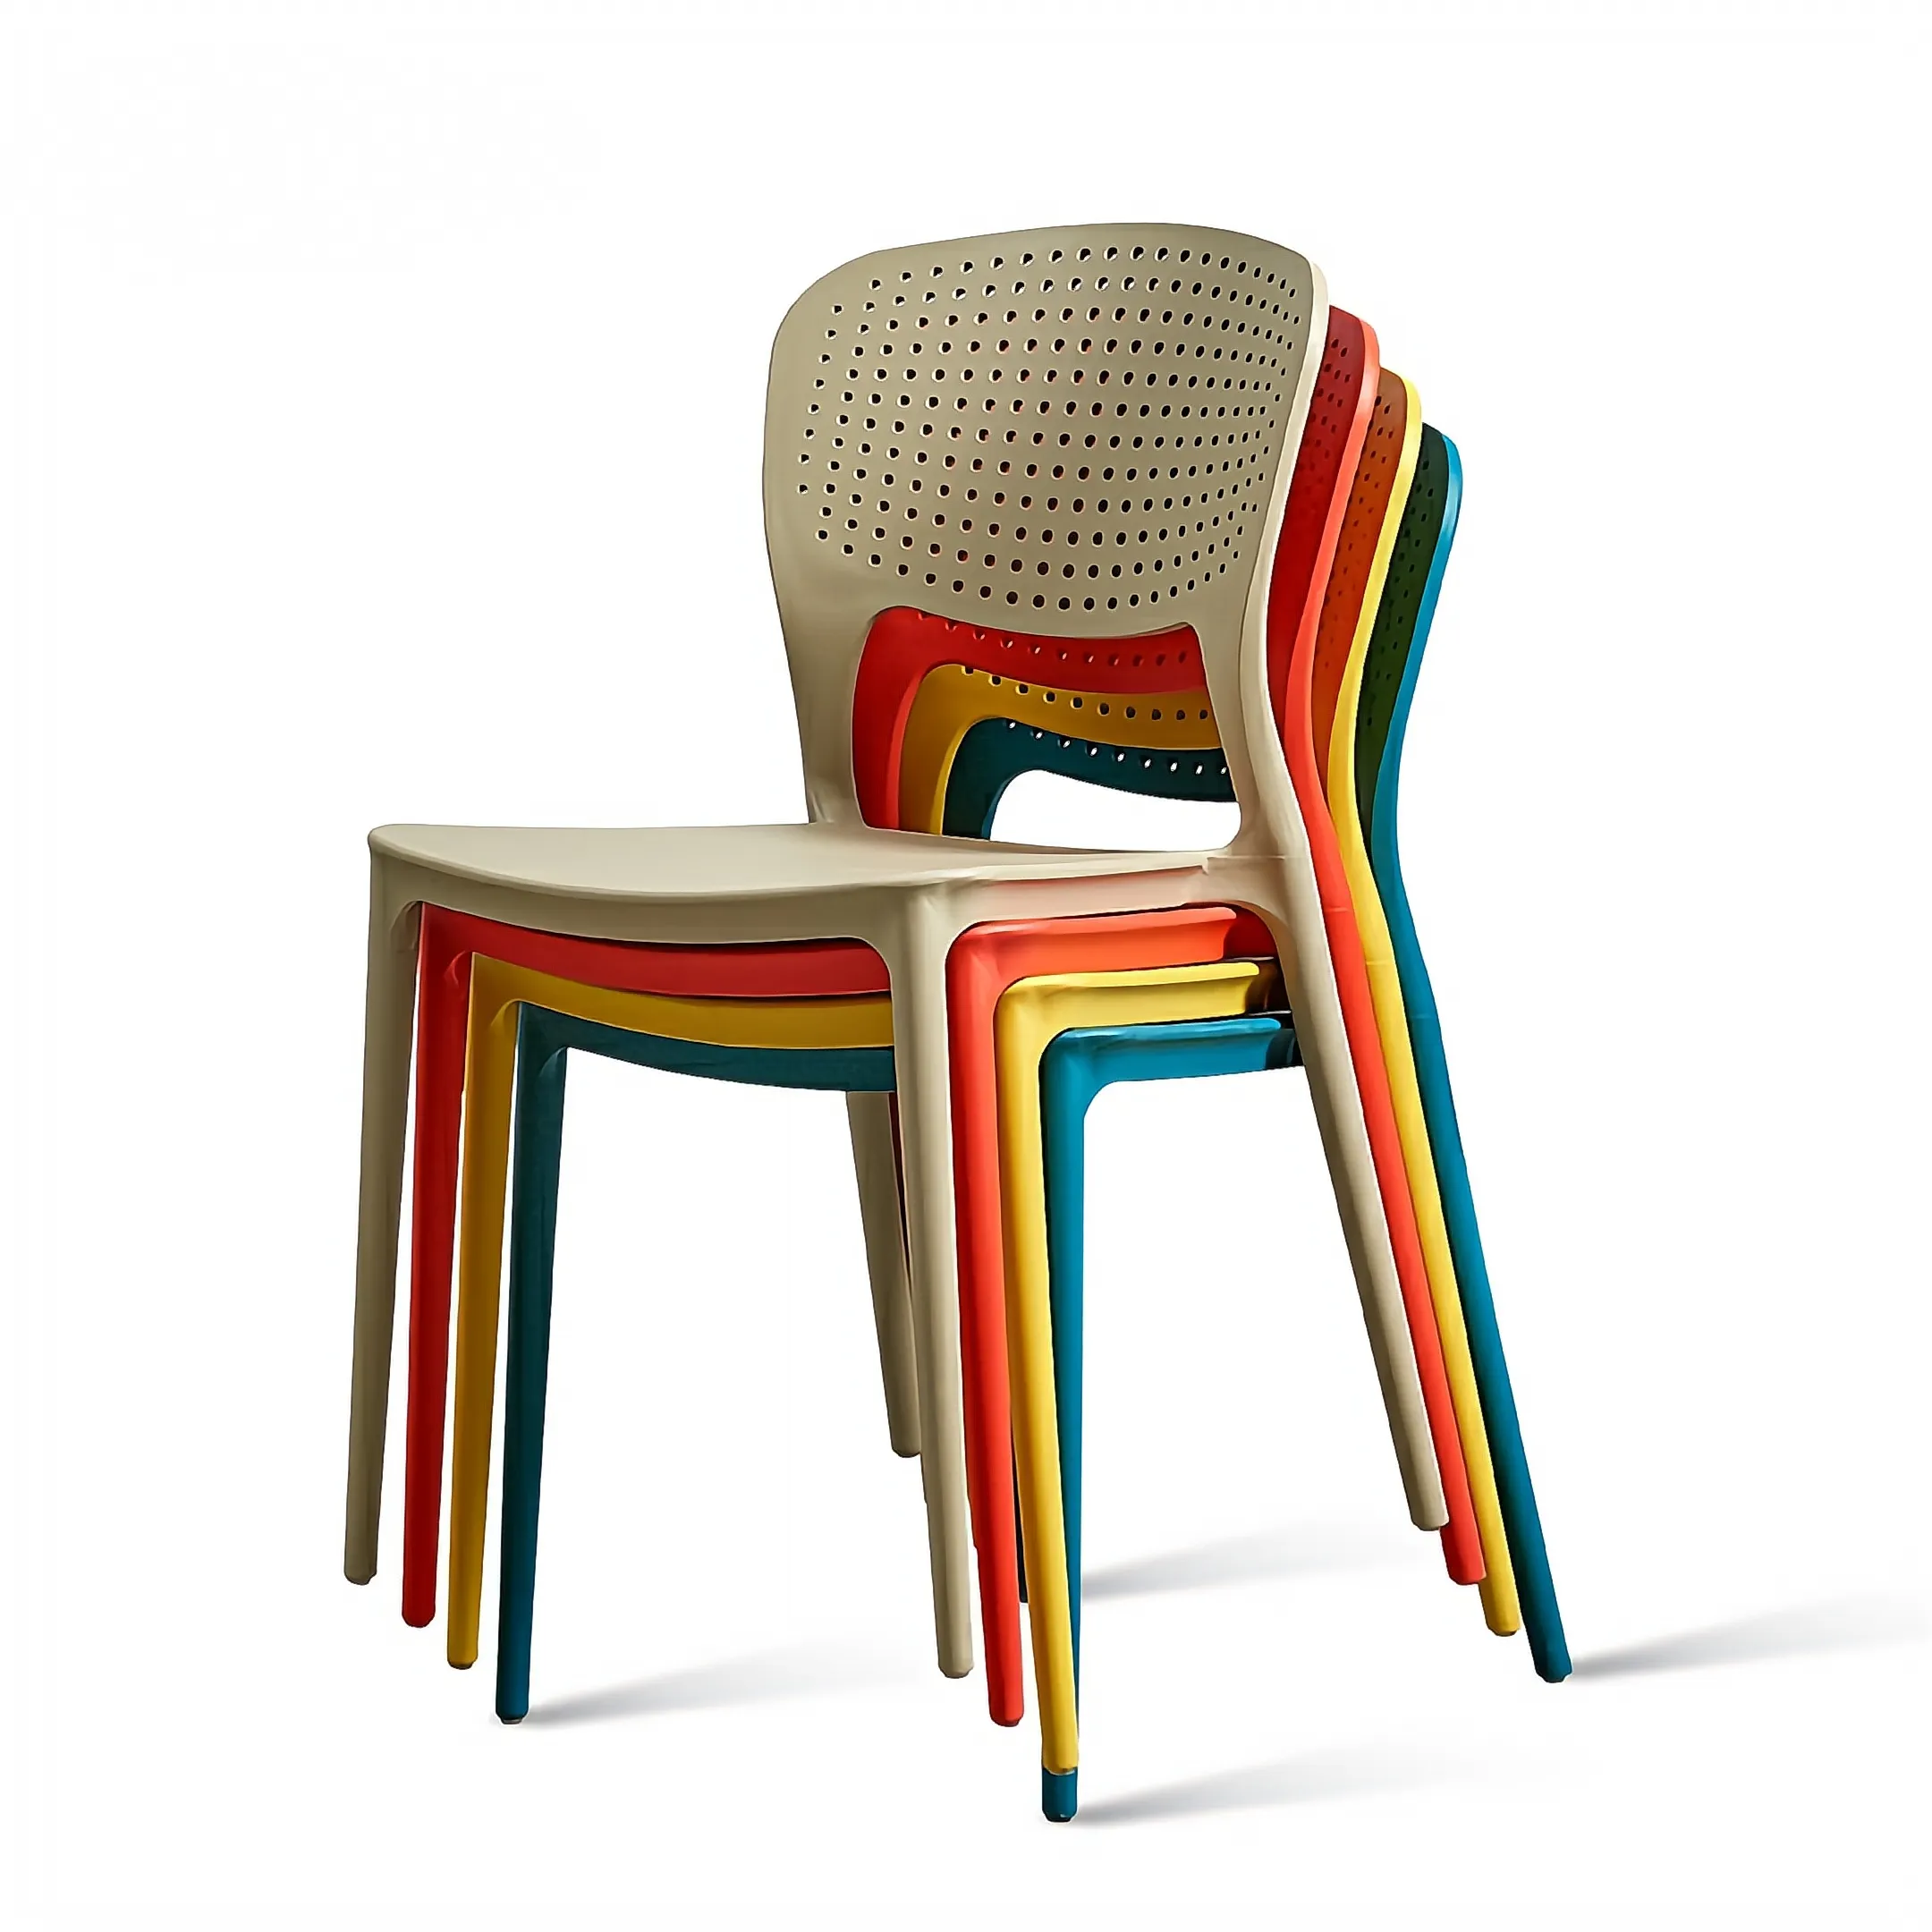 الشمال تصميم المنزلية الطعام كرسي كرسي من البلاستيك الحديثة بسيطة الاقتصادي عودة البراز صافي الأحمر مقصف كرسي بمسند ظهر